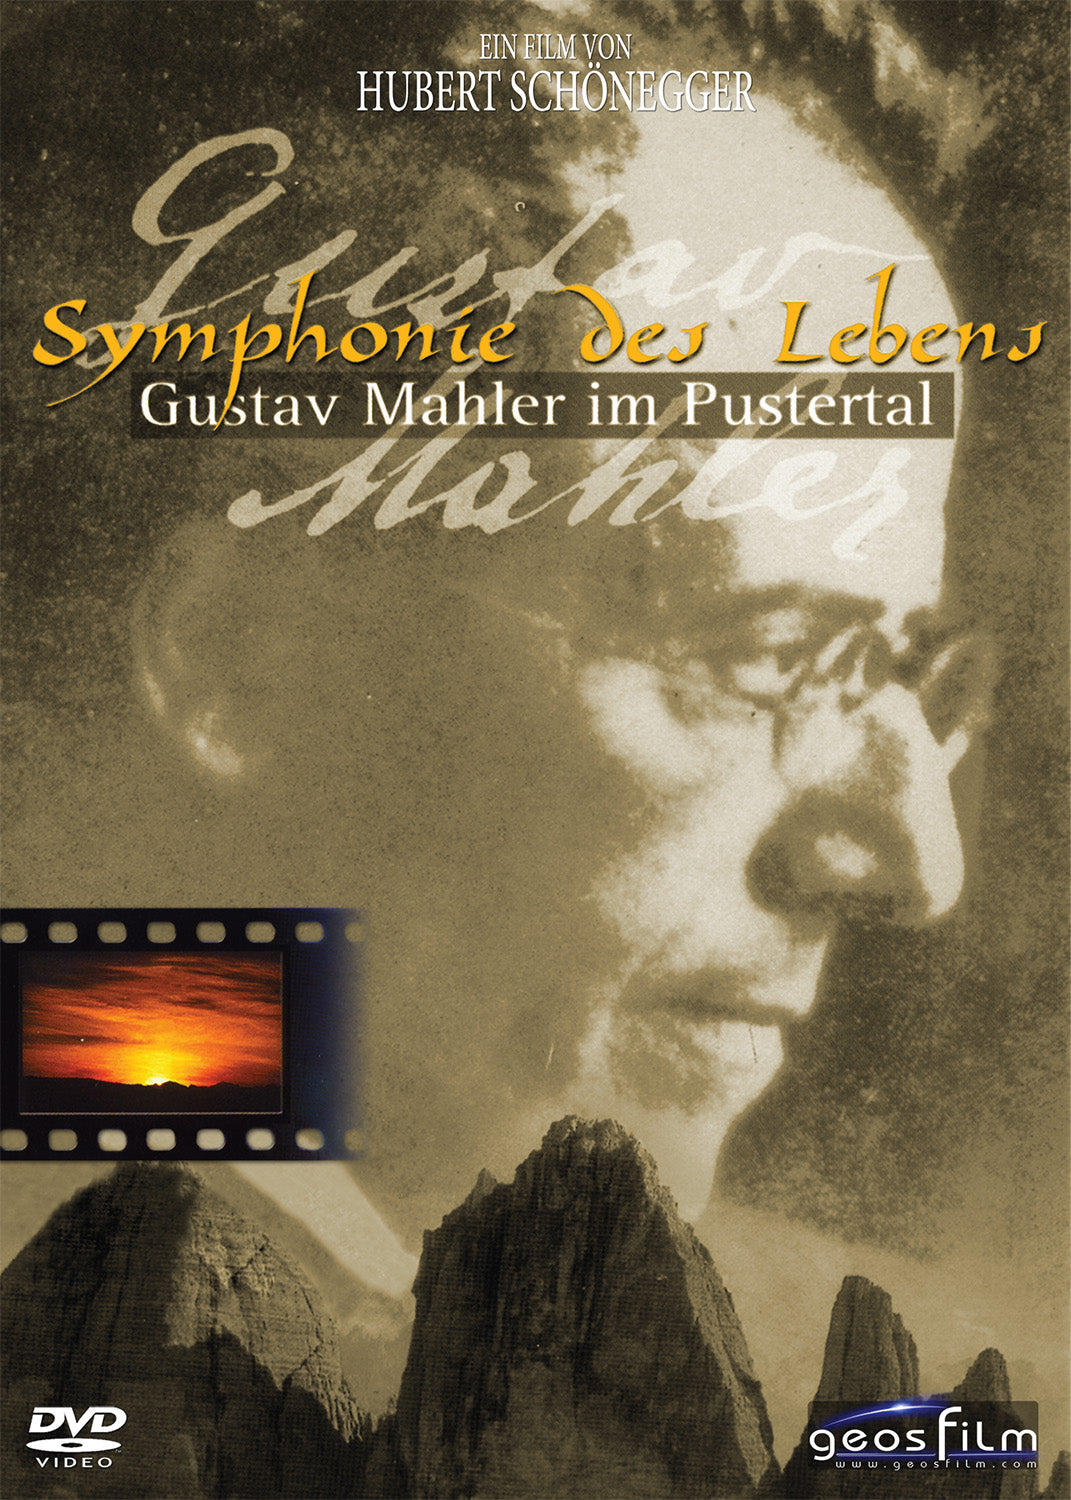 Gustav Mahler im Pustertal